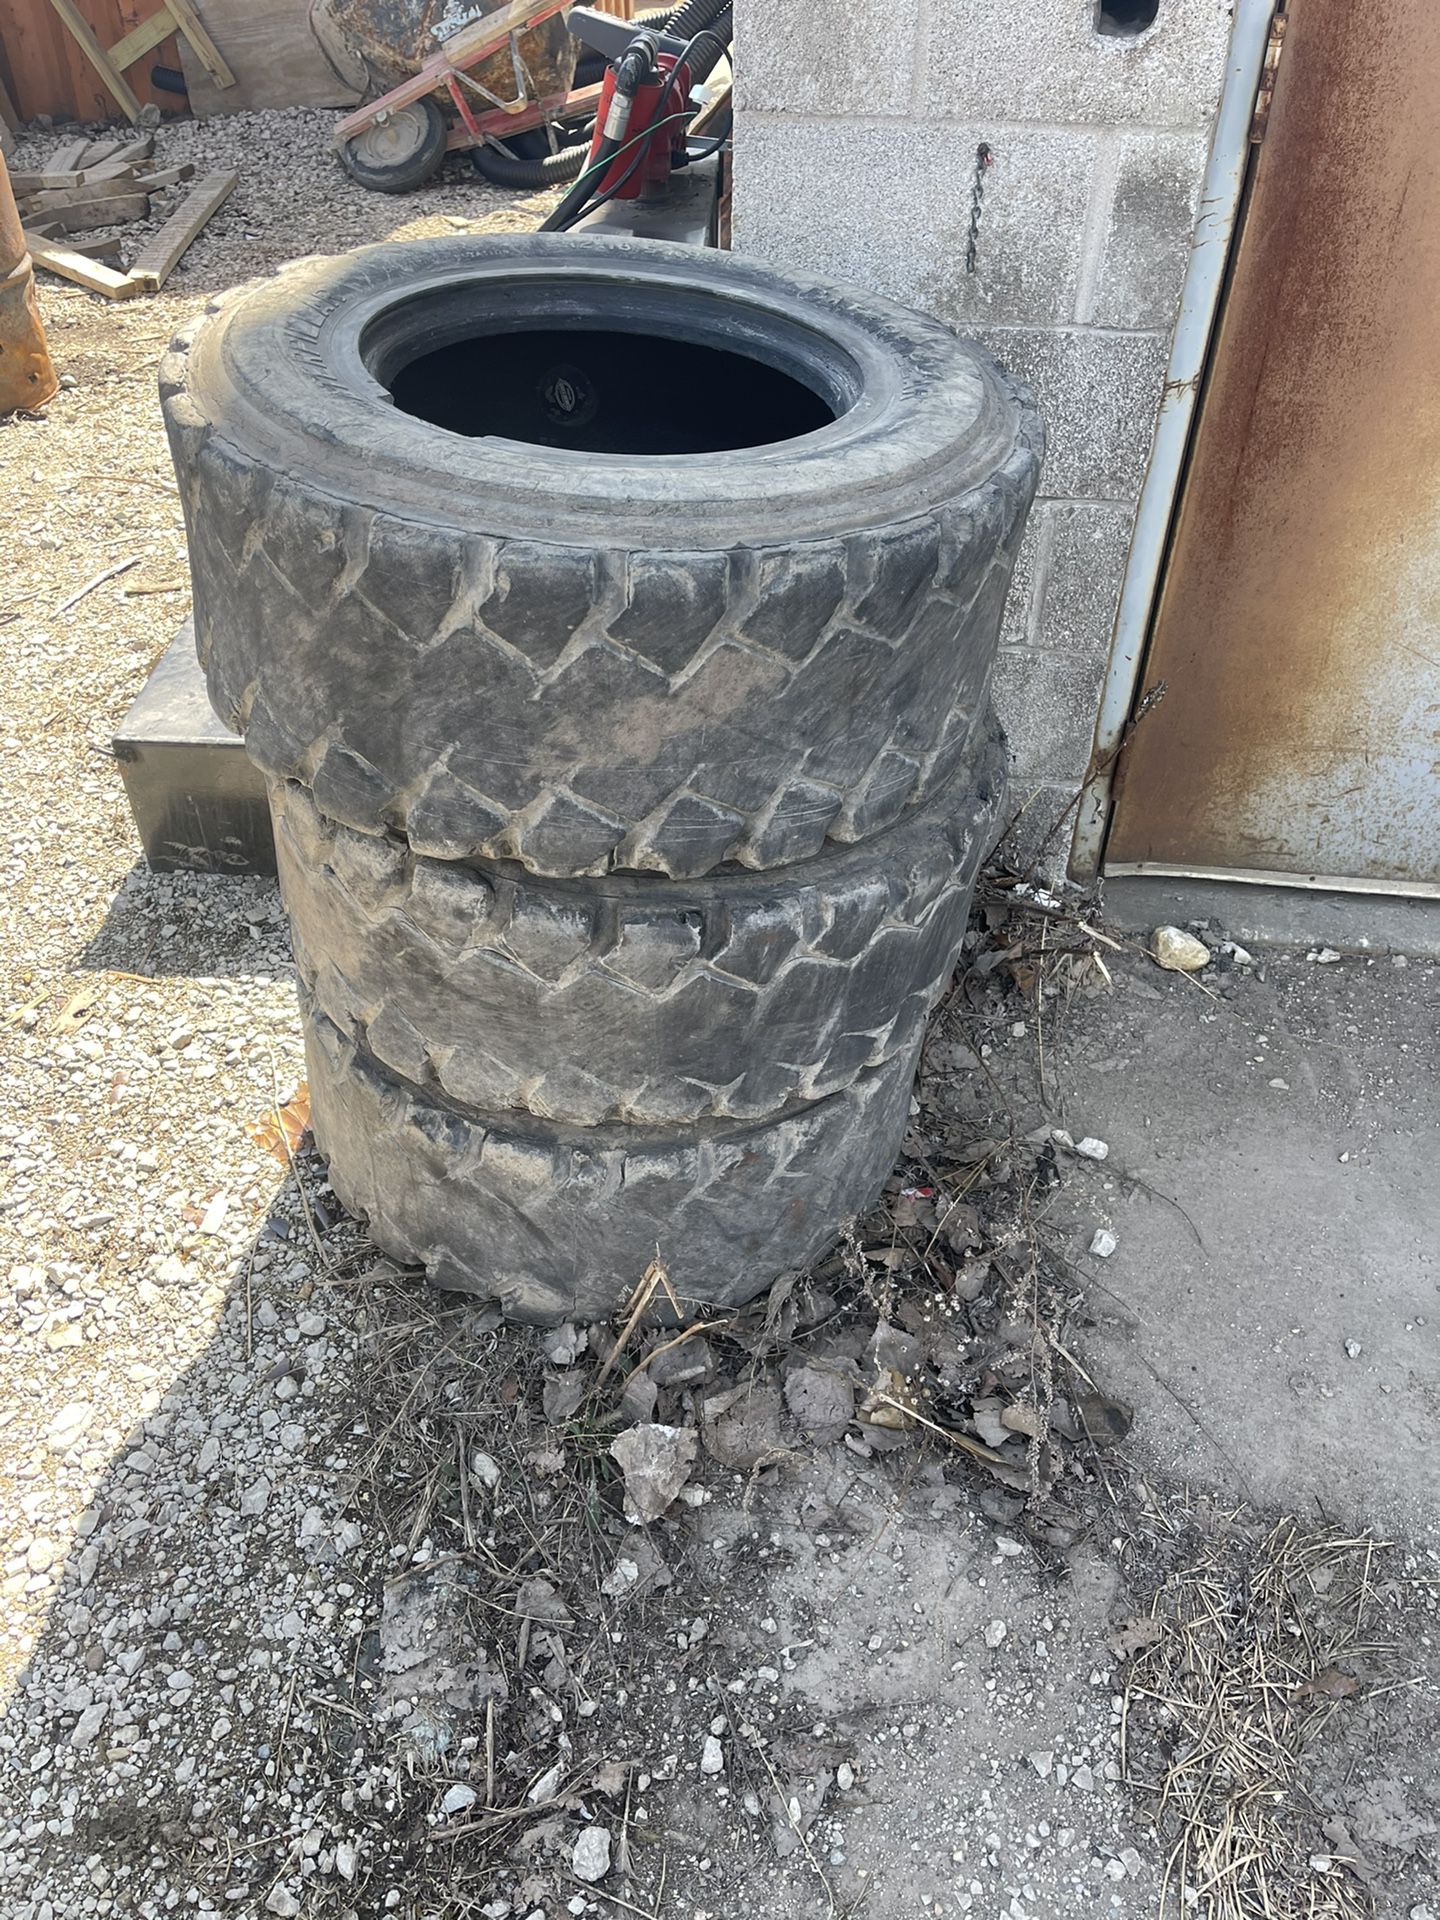 Bobcat Tires 